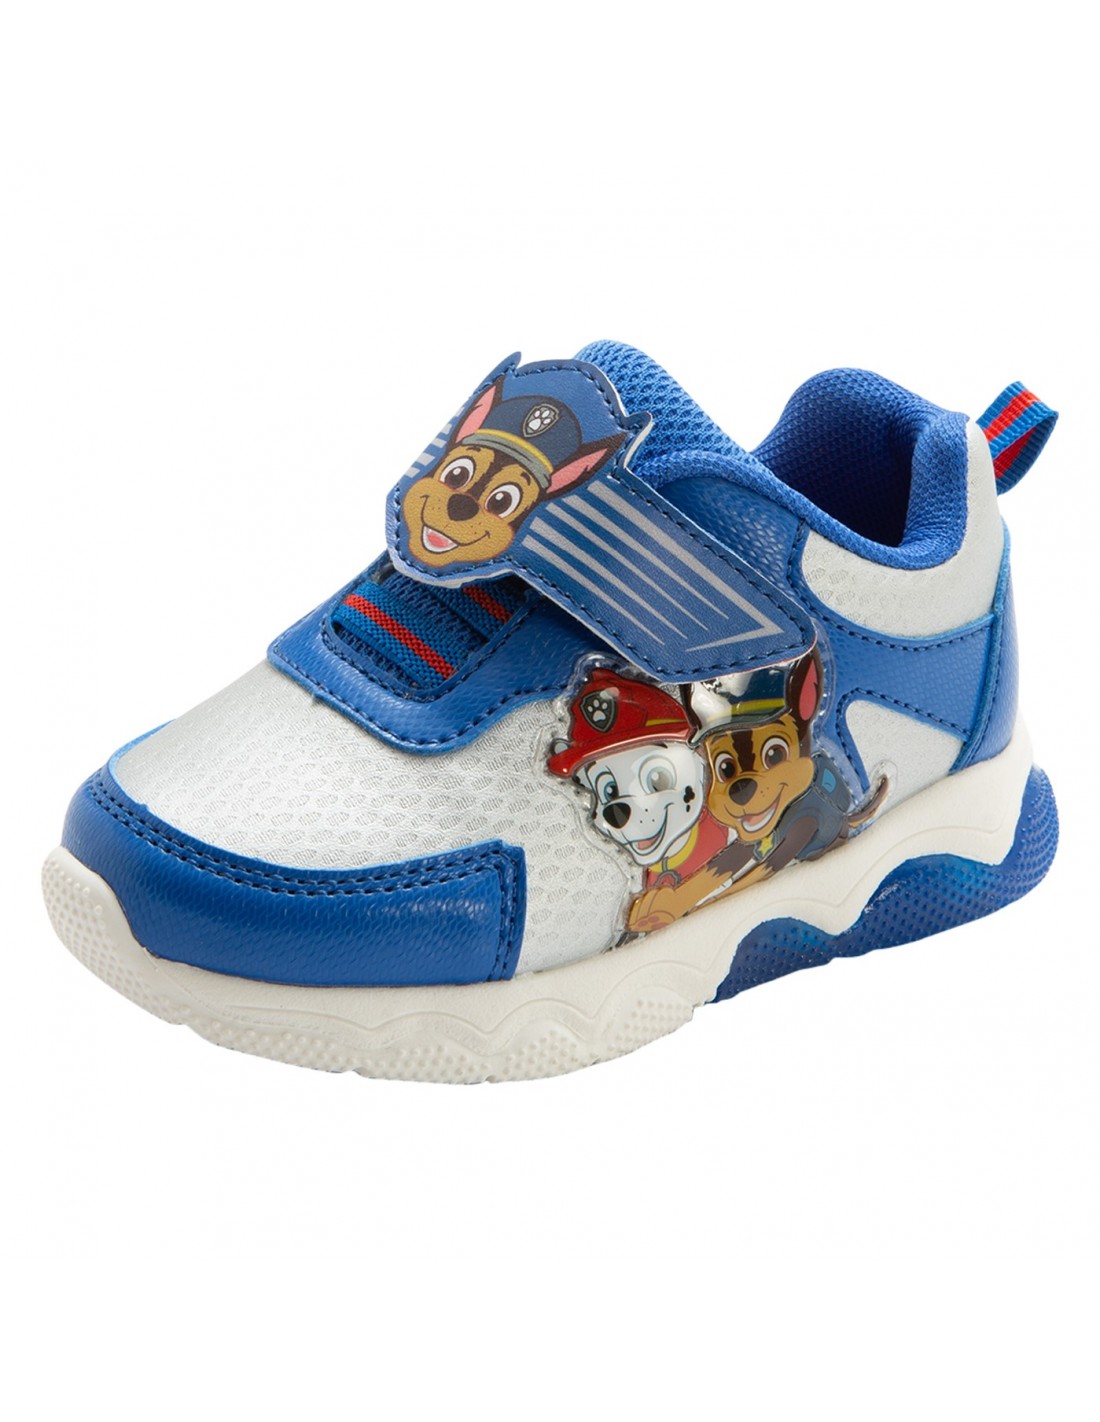 Zapatos para correr con de Paw Patrol para niños pequeños